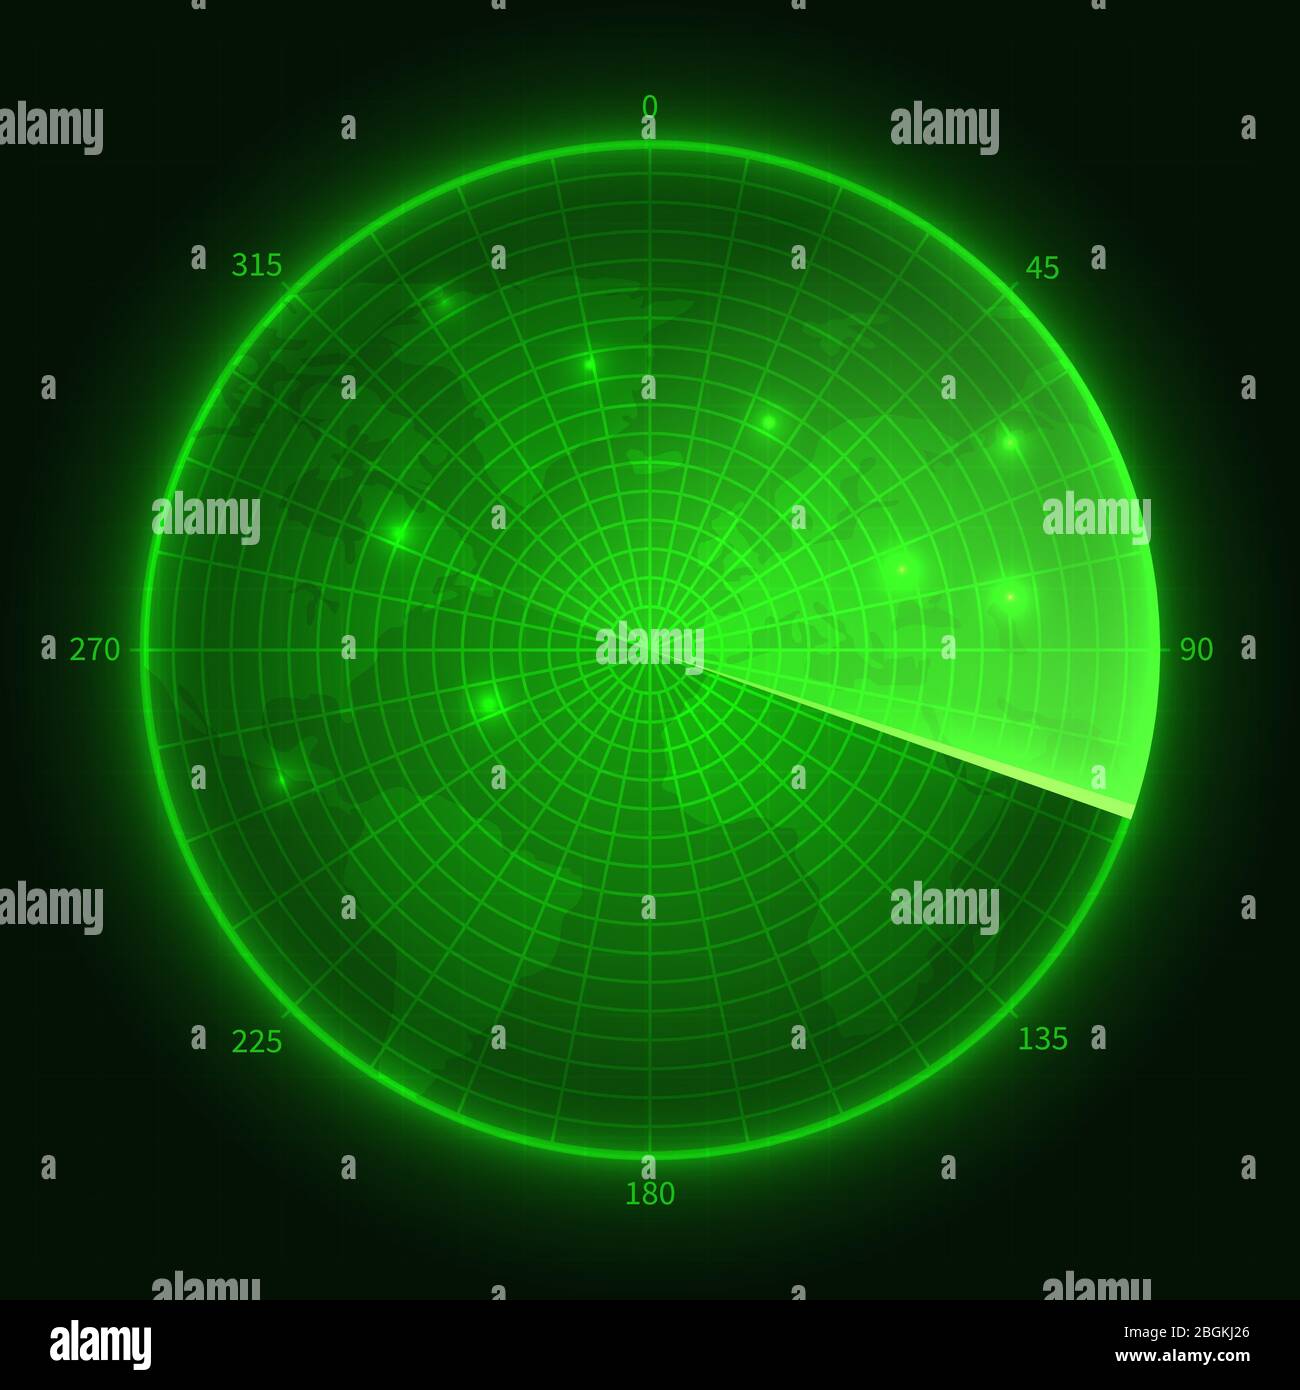 Radar vert. Sonar sous-marin marine avec objectifs. Illustration vectorielle de l'écran de navigation. Écran du sondeur militaire, lecteur du système numérique du moniteur radar Illustration de Vecteur